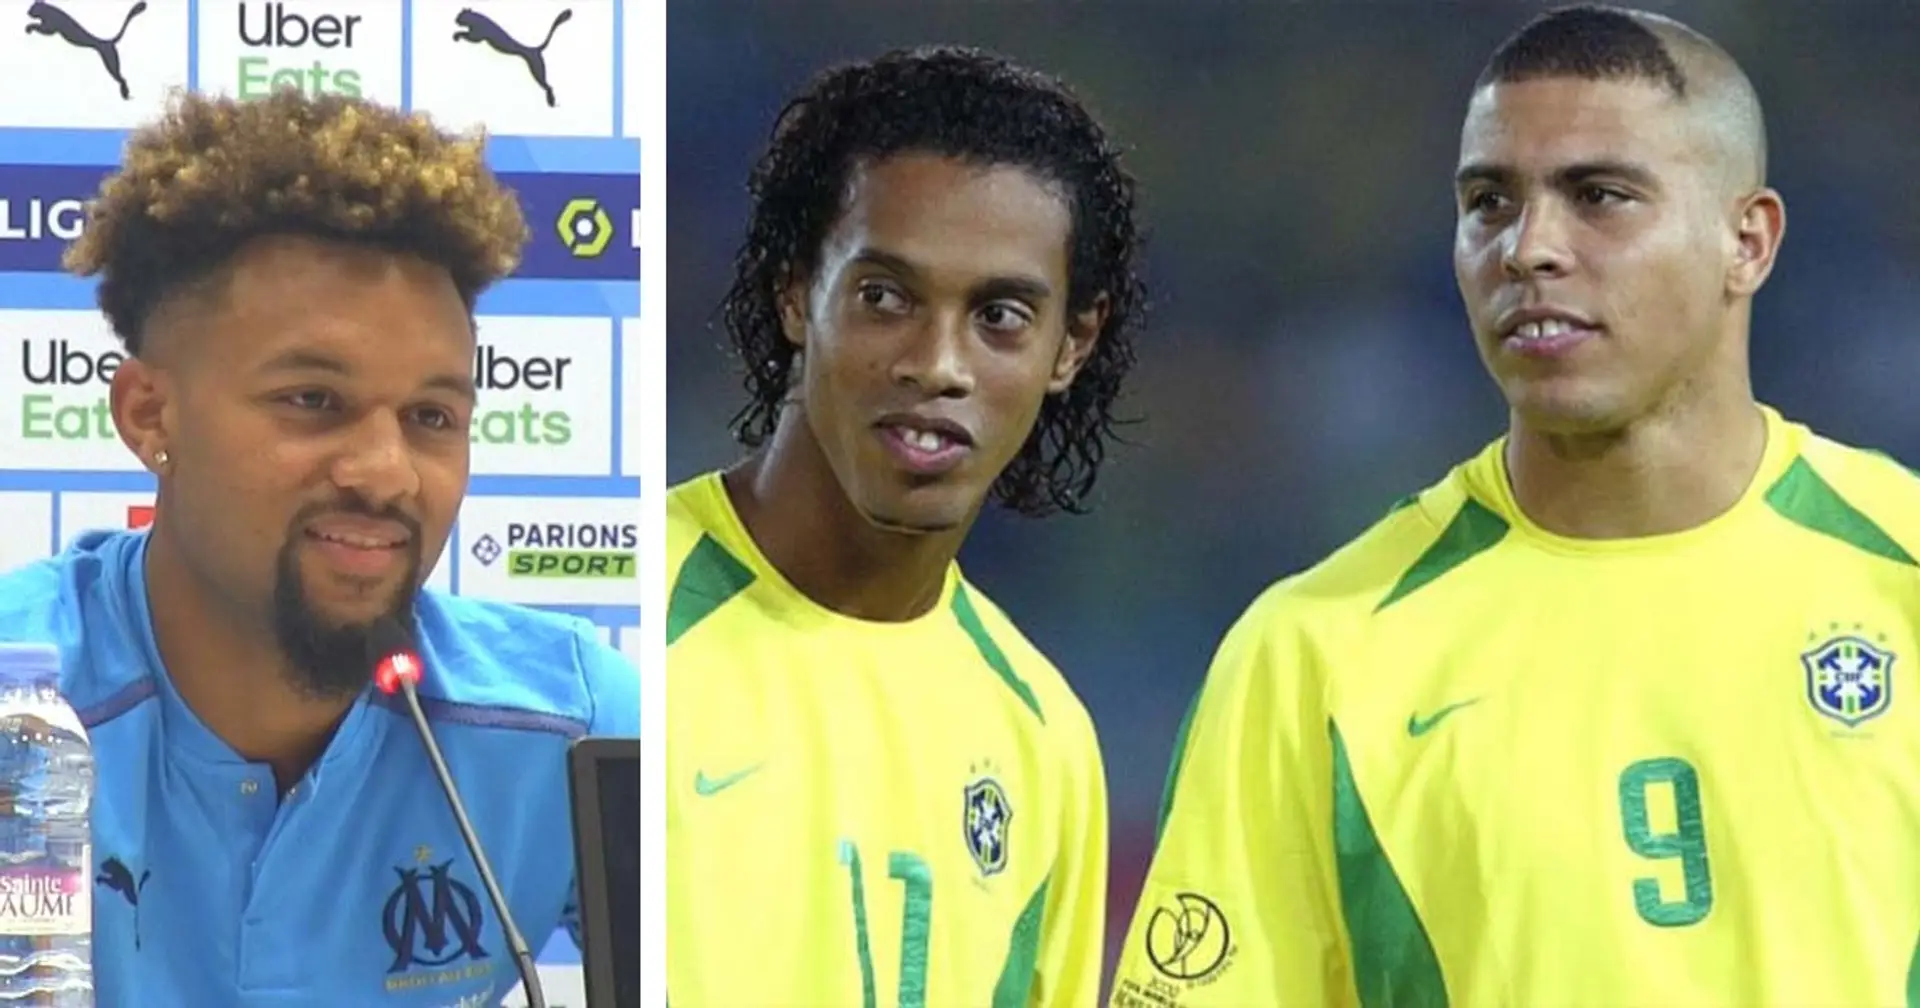 "Un joueur offensif, rapide", Konrad de la Fuente se décrit comme ses idoles brésiliens Ronaldinho et Ronaldo